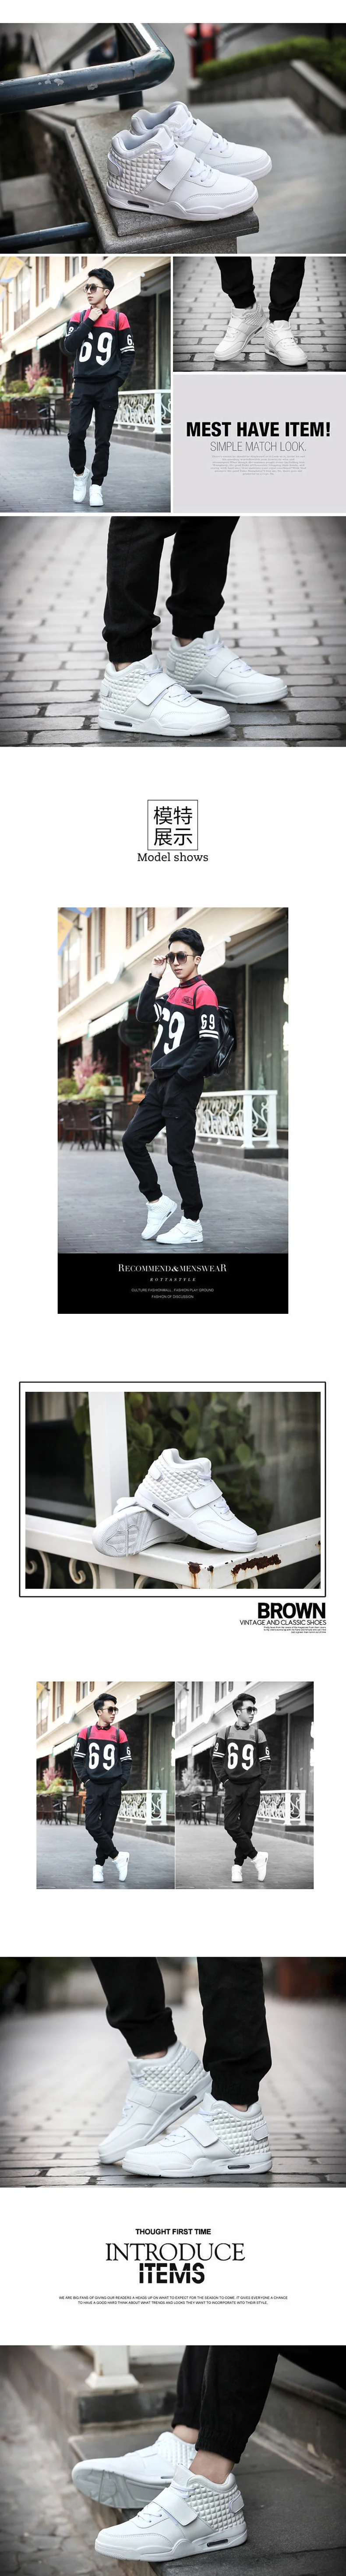 Размера плюс 46 Ретро Bakset Homme бренд Для мужчин баскетбольные кроссовки для кроссовки Для мужчин s Фитнес Спортивная обувь белый мужской Иордания обувь